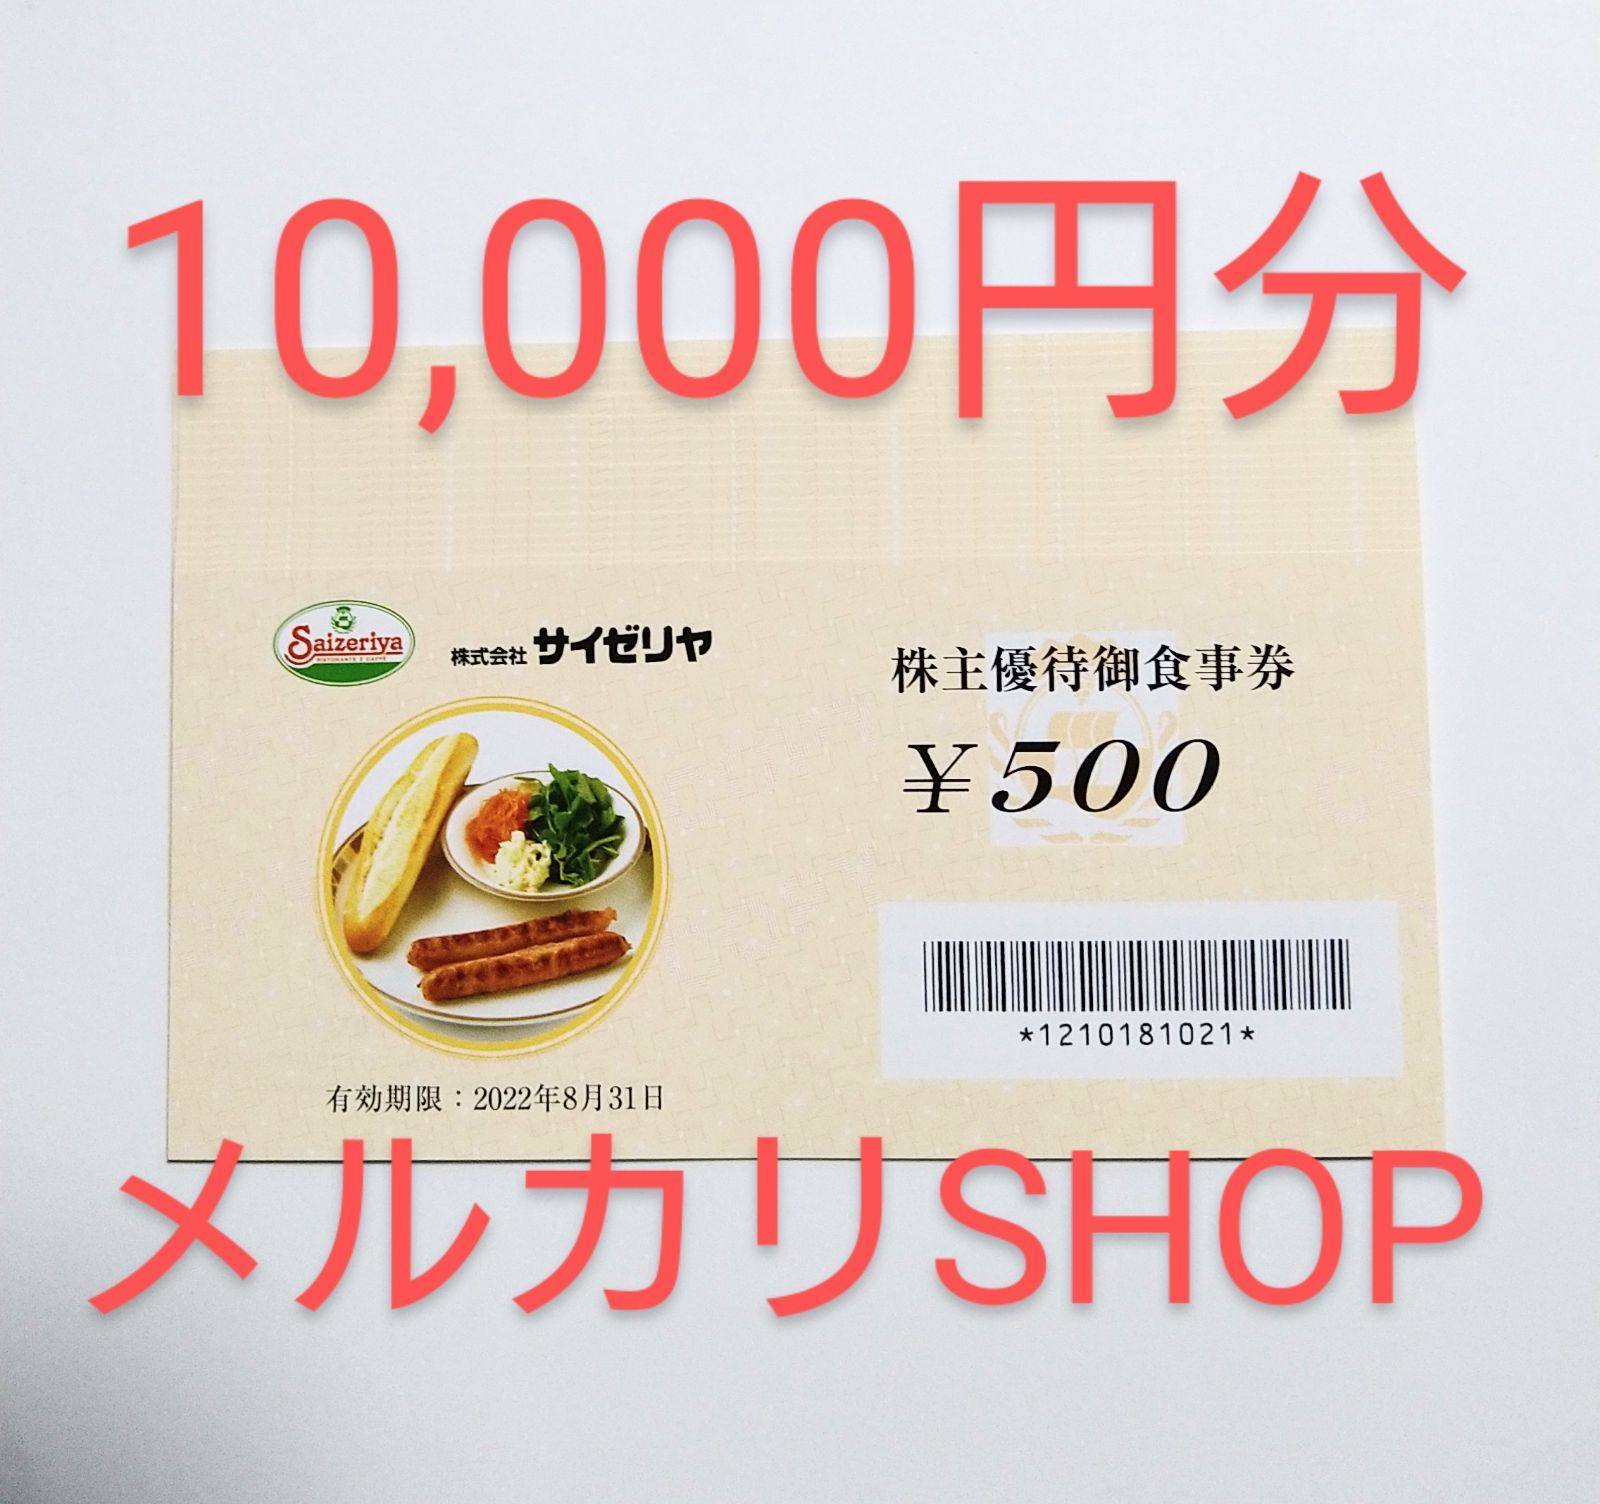 サイゼリヤ 株主優待券 10,000円分 - メルチャショップ - メルカリ